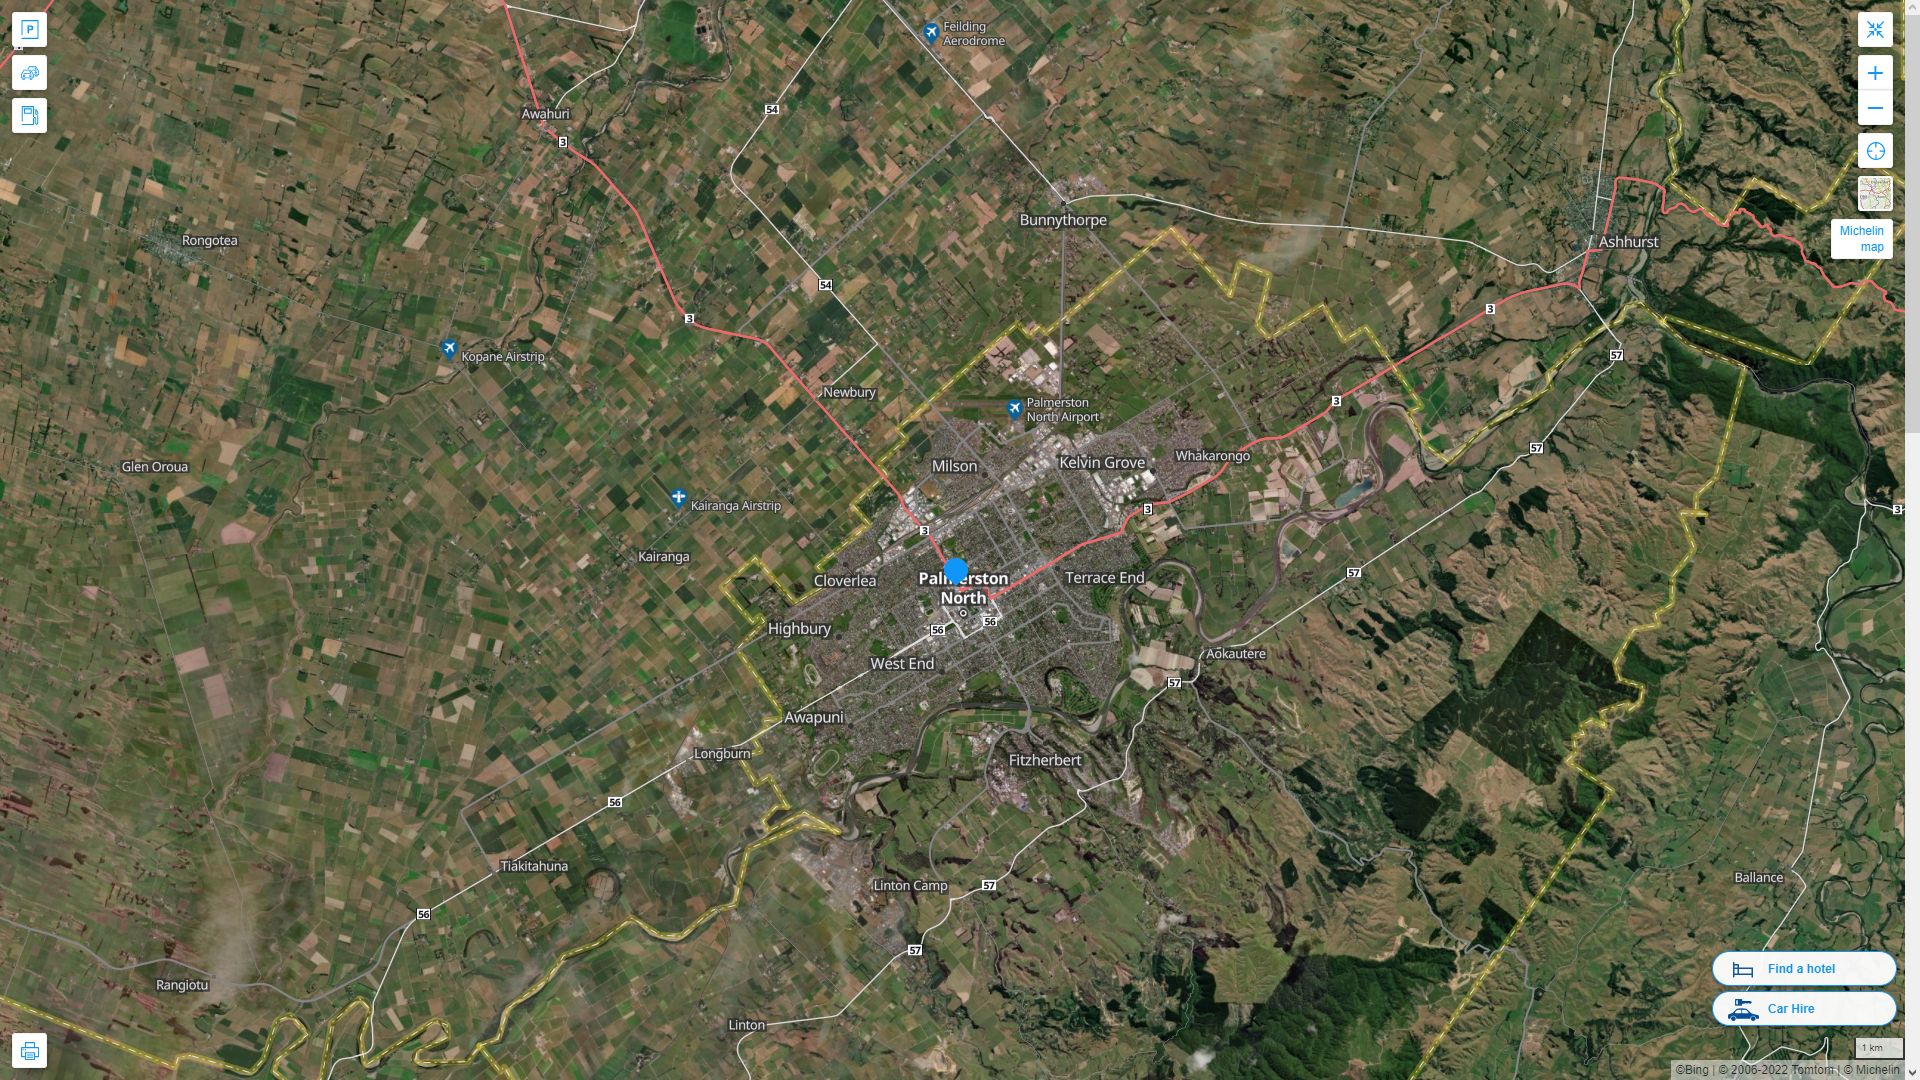 Palmerston North Nouvelle Zelande Autoroute et carte routiere avec vue satellite